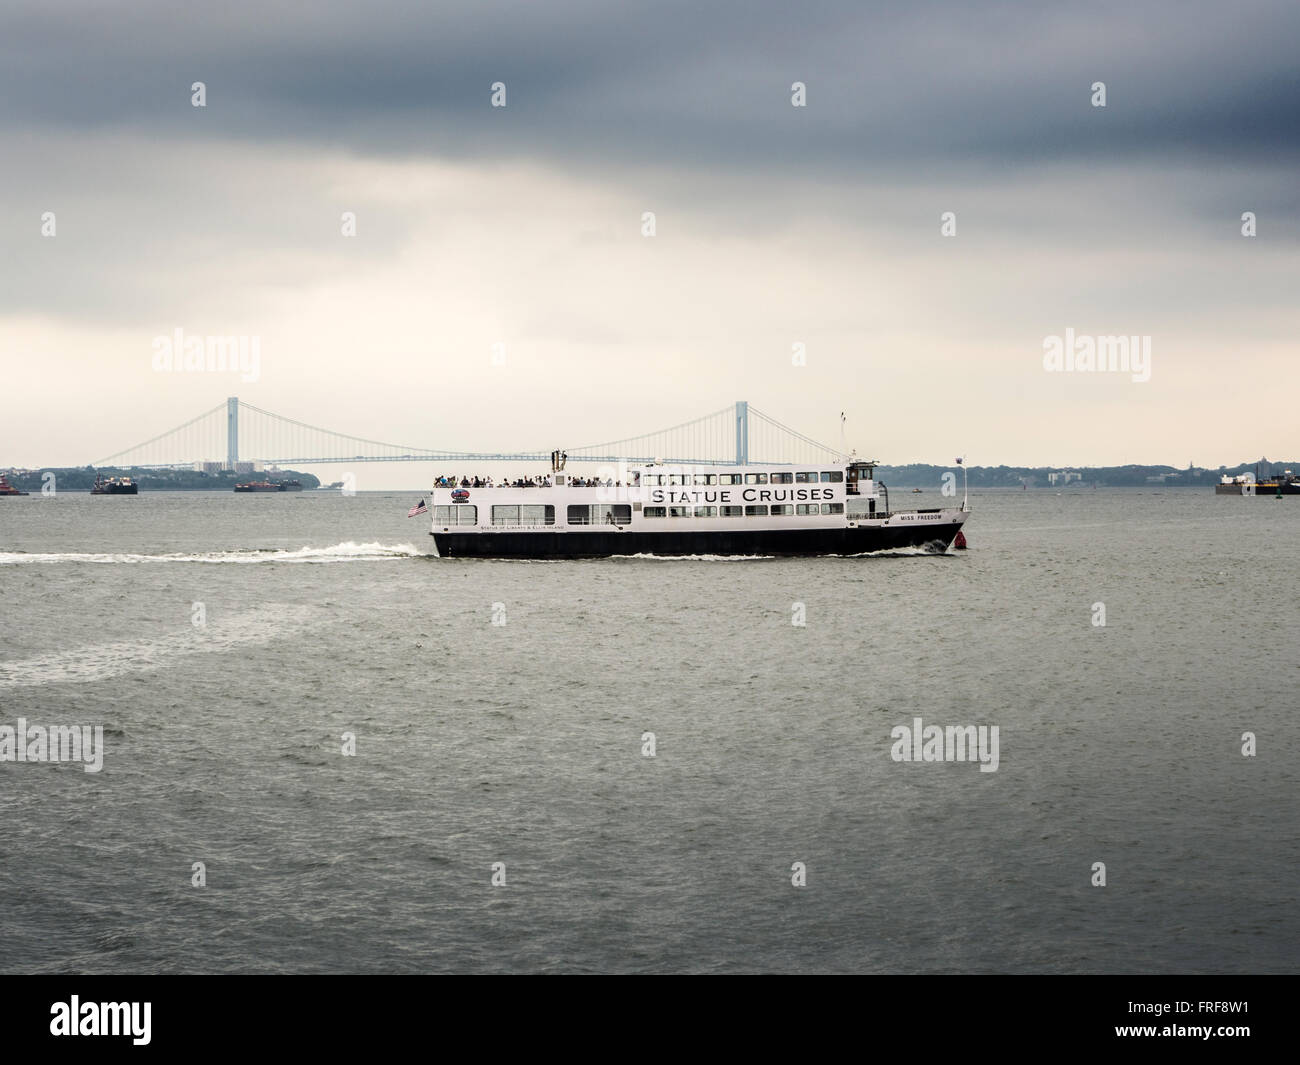 Statua crociere in barca turistica con ponte Verrazano-Narrows in background, New York, Stati Uniti d'America. Foto Stock